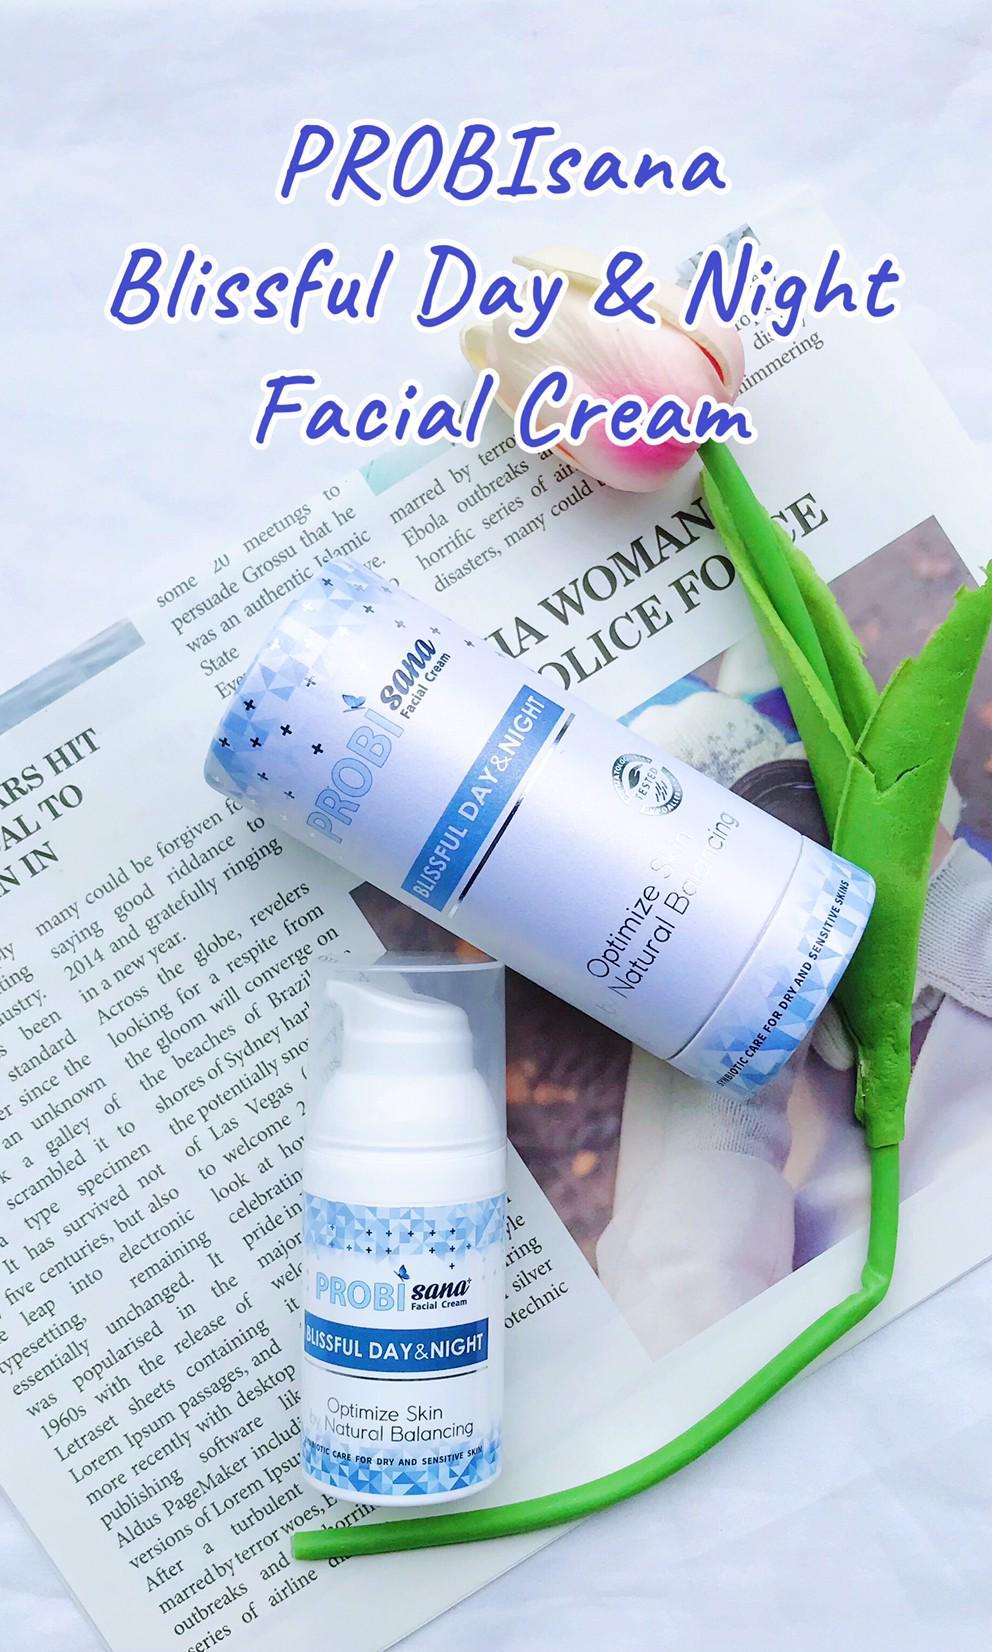 ภาพหน้าปก ฟื้นฟูผิวหน้าให้แข็งแรง สุขภาพดีด้วย “PROBIsana Blissful Day & Night  Facial Cream” ที่:0